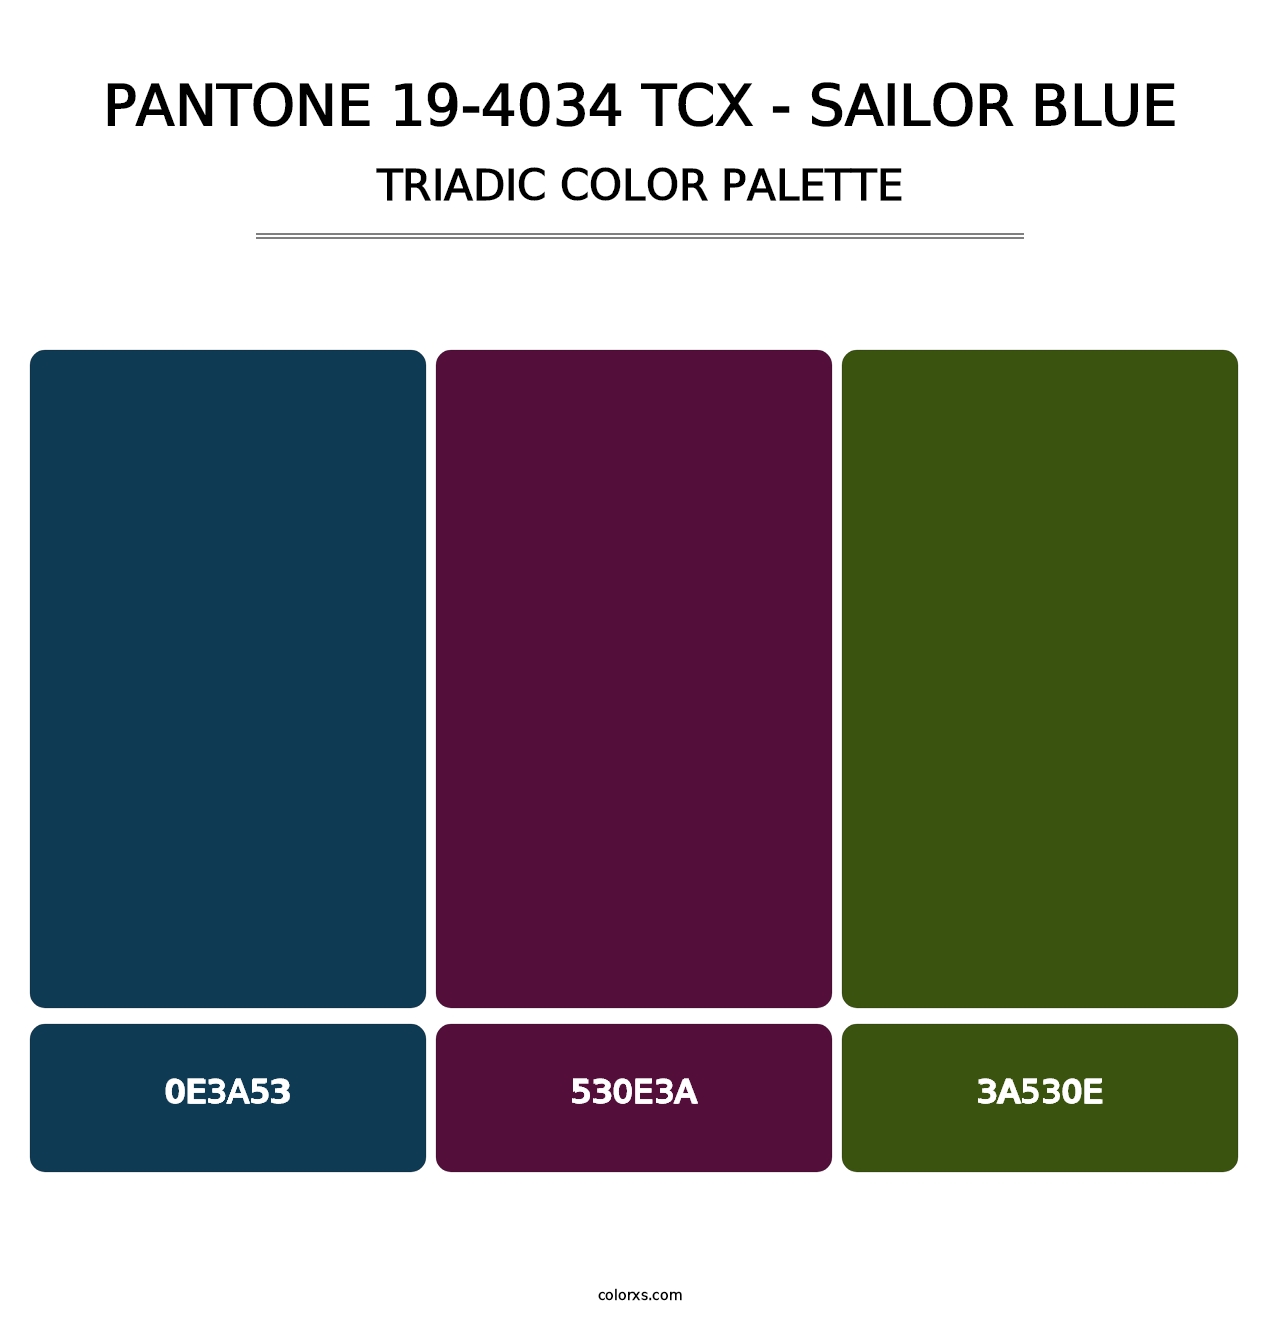 PANTONE 19-4034 TCX - Sailor Blue - Triadic Color Palette